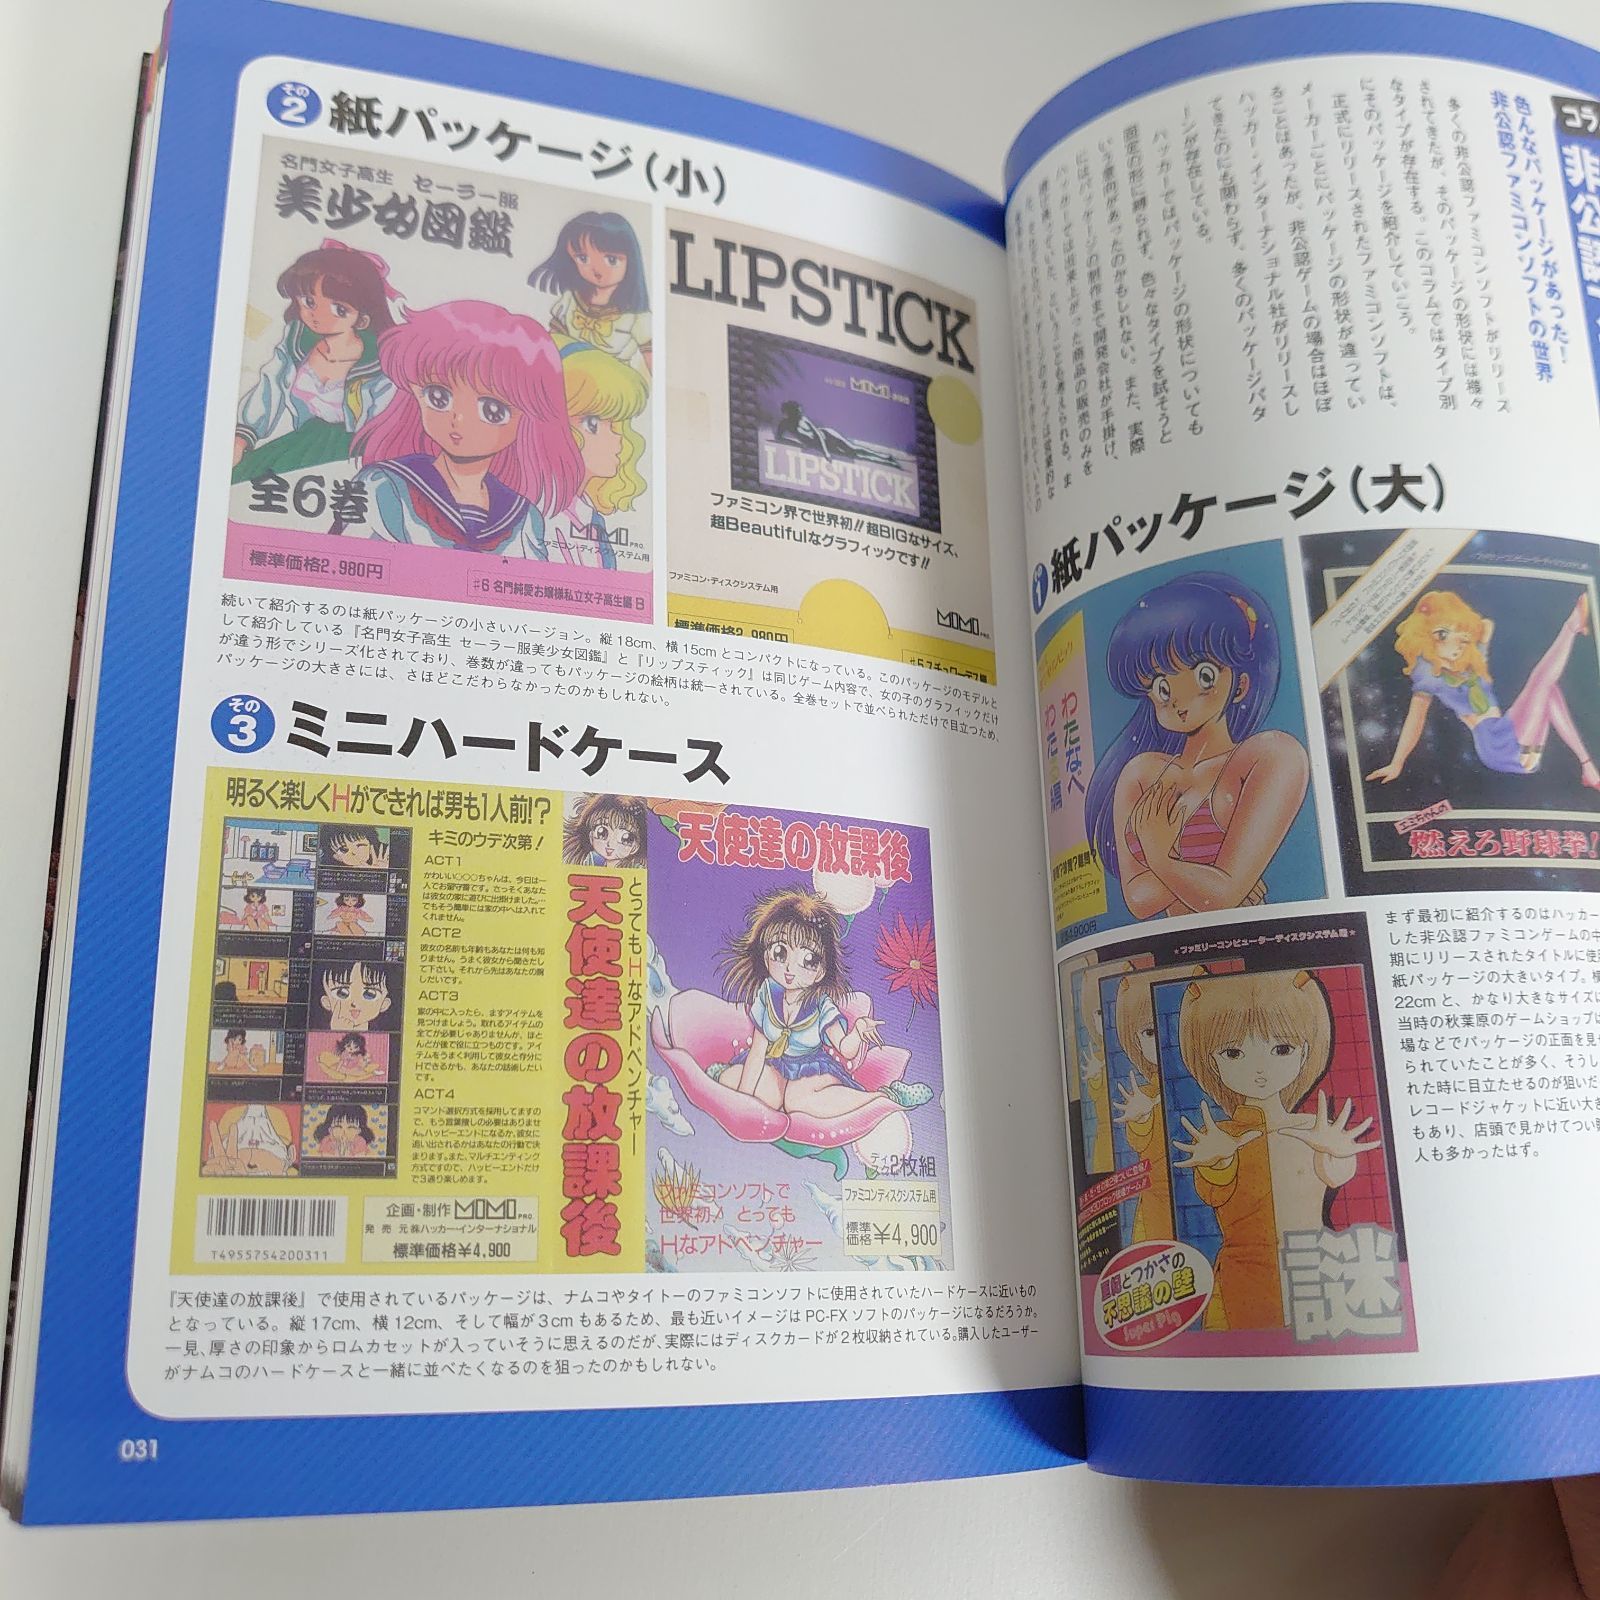 ファミコン非公認ゲームガイド ファミコンの裏歴史!蘇る8ビットの美少女たち - メルカリShops